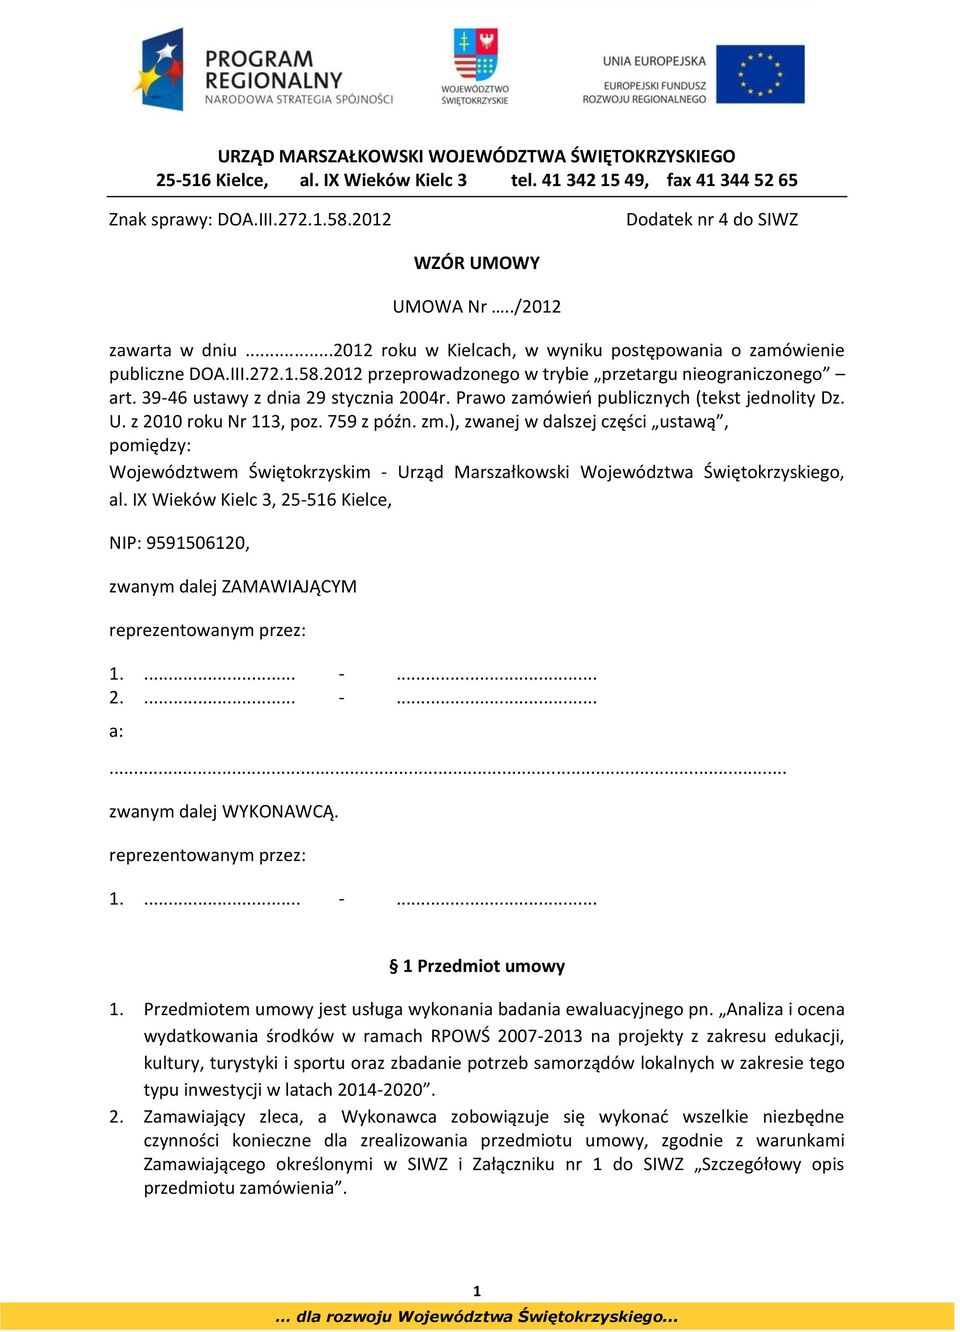 Prawo zamówień publicznych (tekst jednolity Dz. U. z 2010 roku Nr 113, poz. 759 z późn. zm.